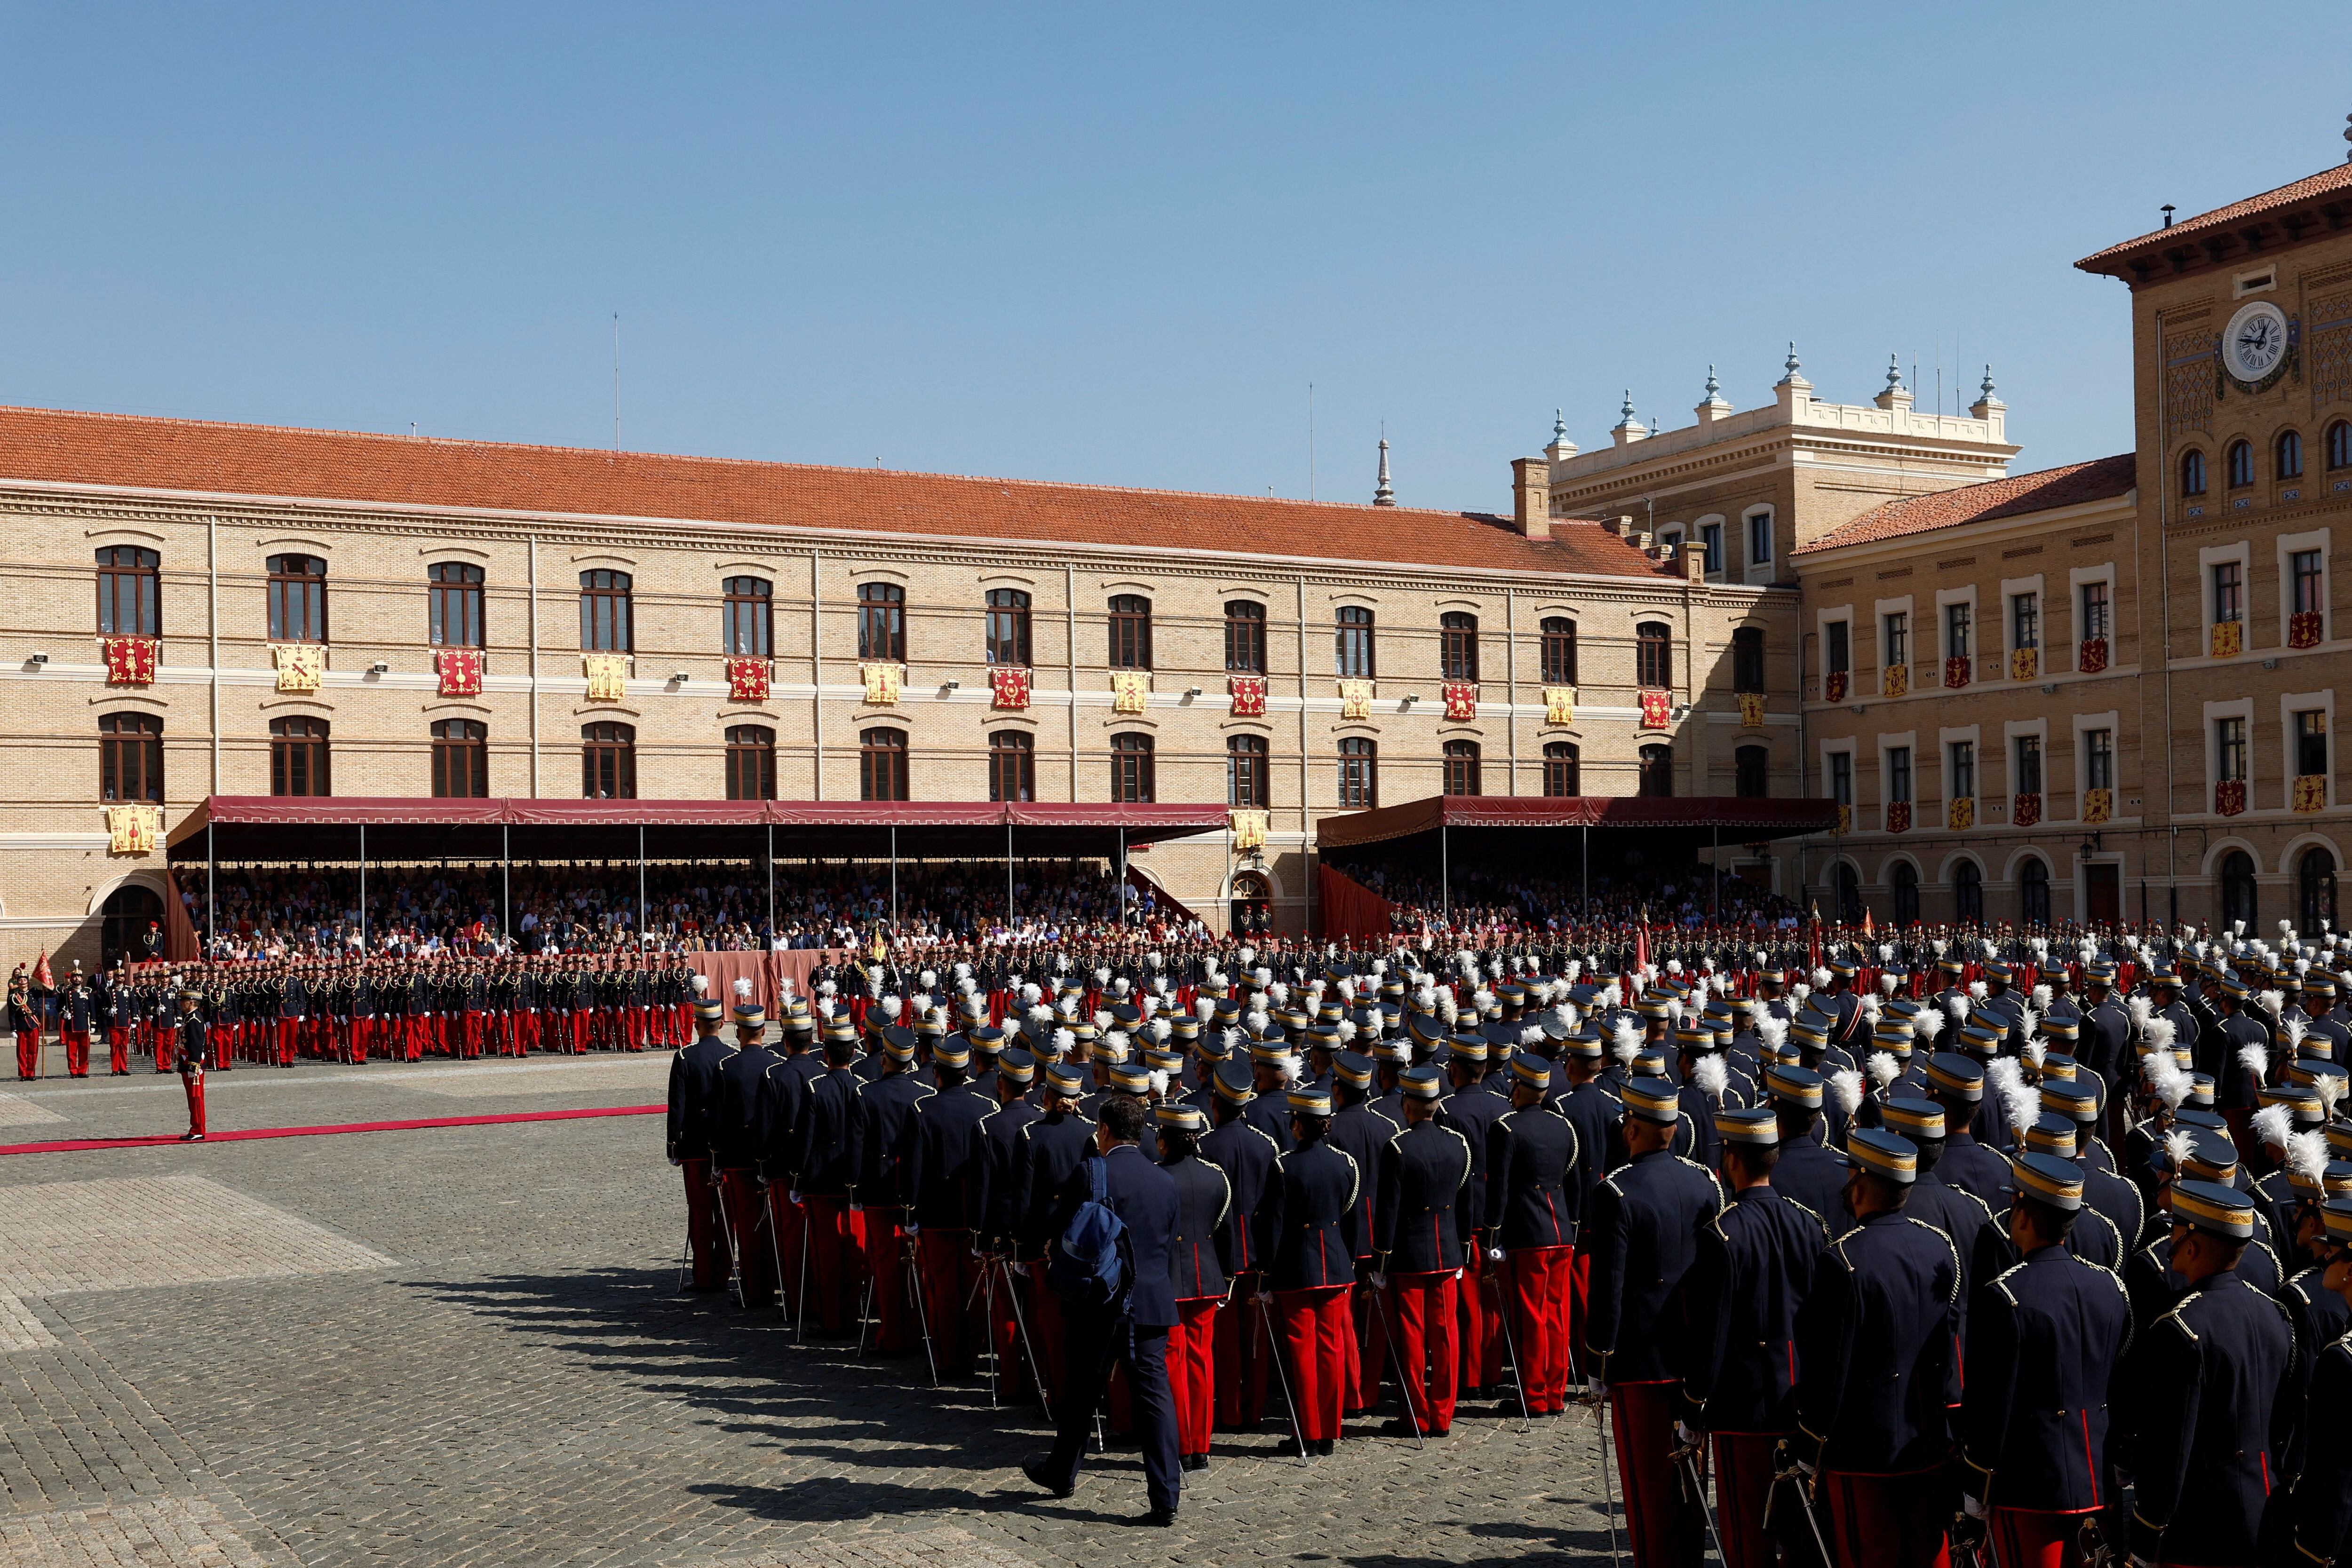 La plaza de armas de la Academia Militar de Zaragoza se ha engalanado con reposteros con los emblemas de los cuerpos y armas del Ejército de Tierra para acoger a las 2.500 personas que han asistido a la ceremonia de jura de bandera de los cadetes.